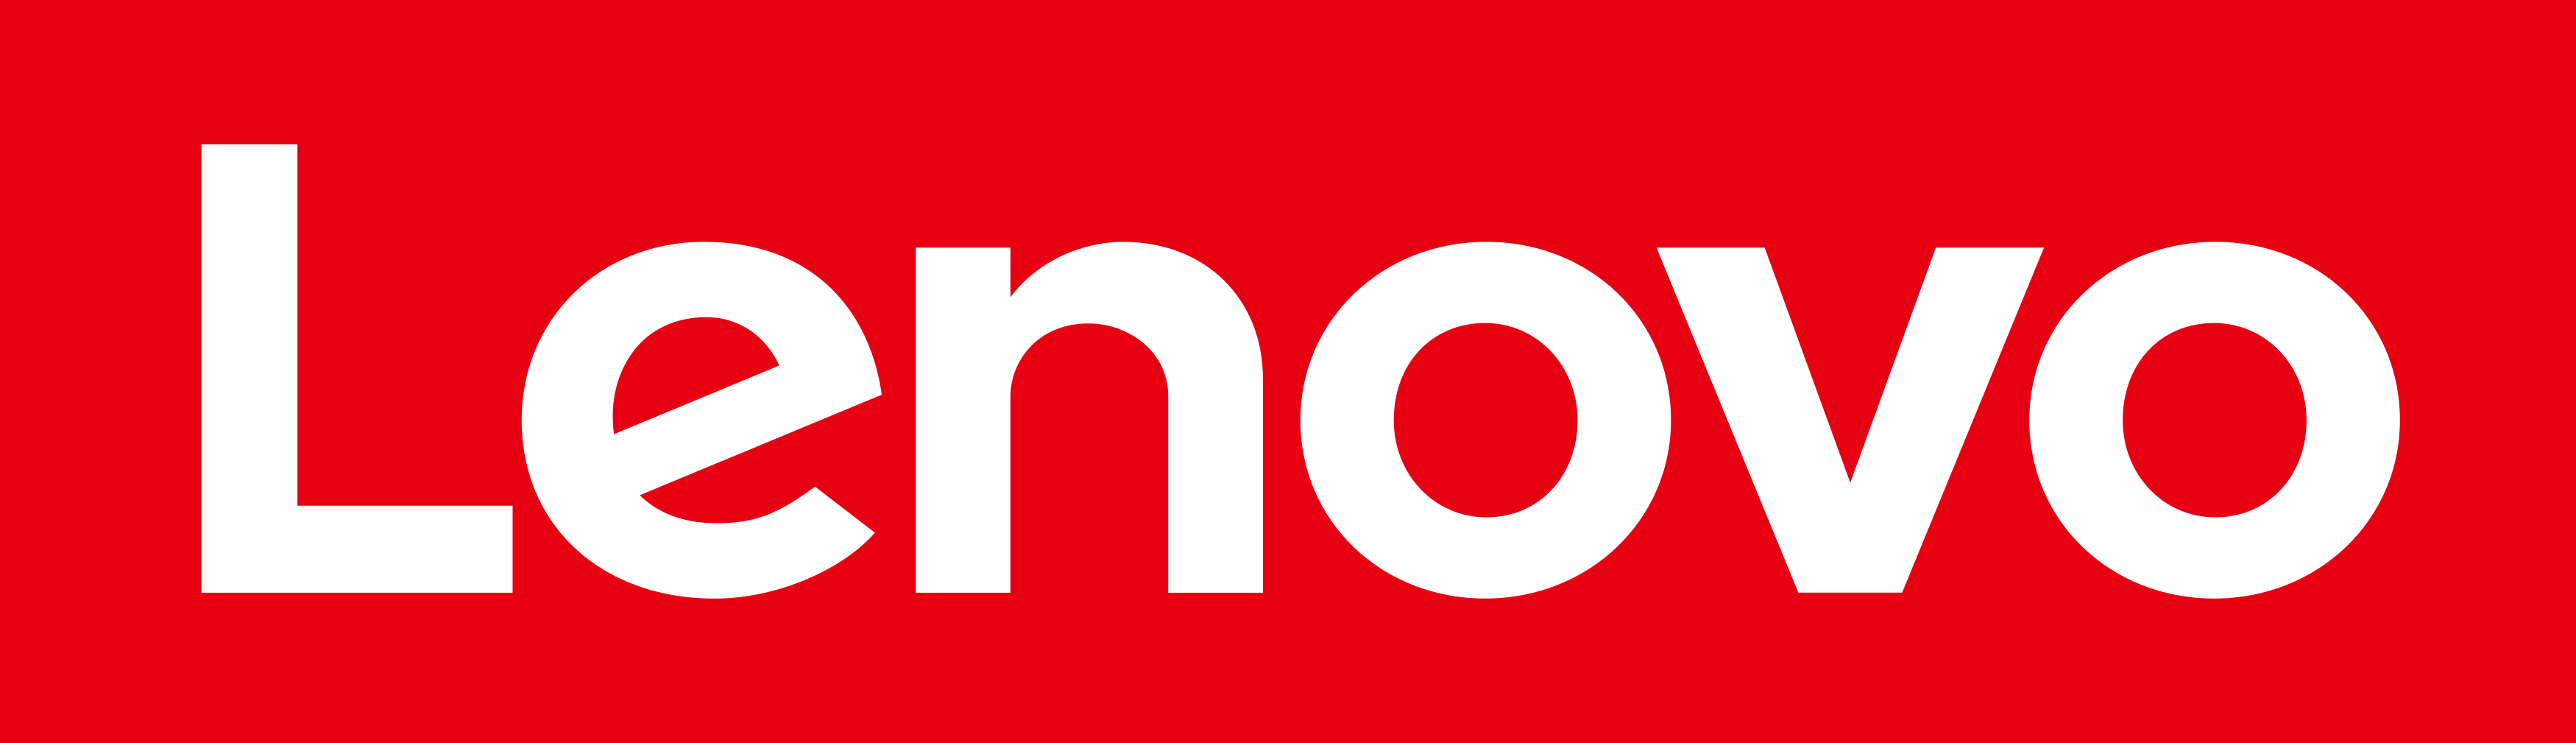 lenovo-logo-1-1